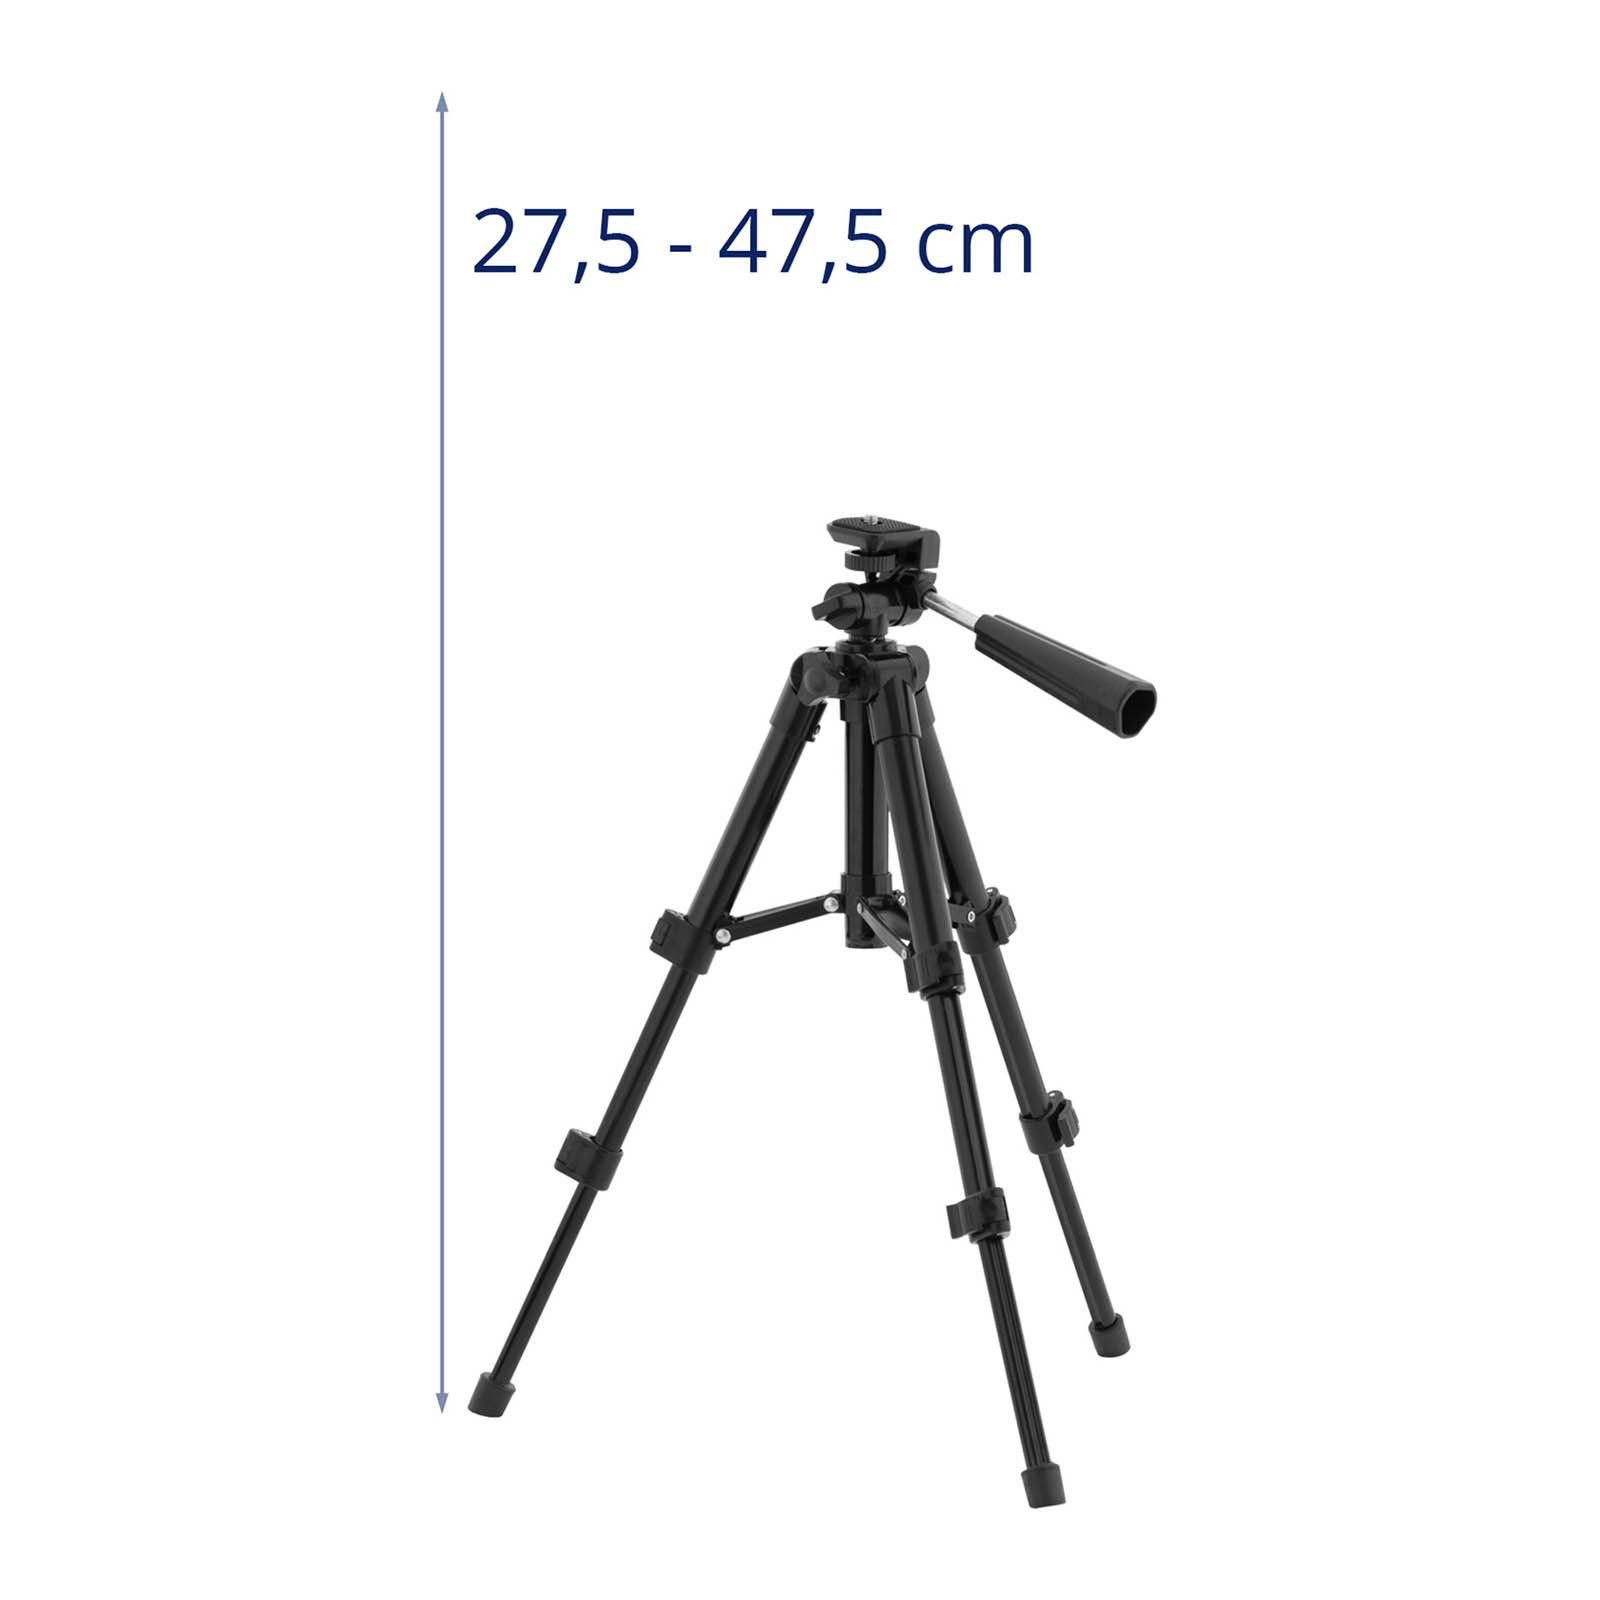 Steinberg Systems Stativ universal Tripod 276-474 mm Kamerastativ 1/4"-Gewinde Dreibeinstativ